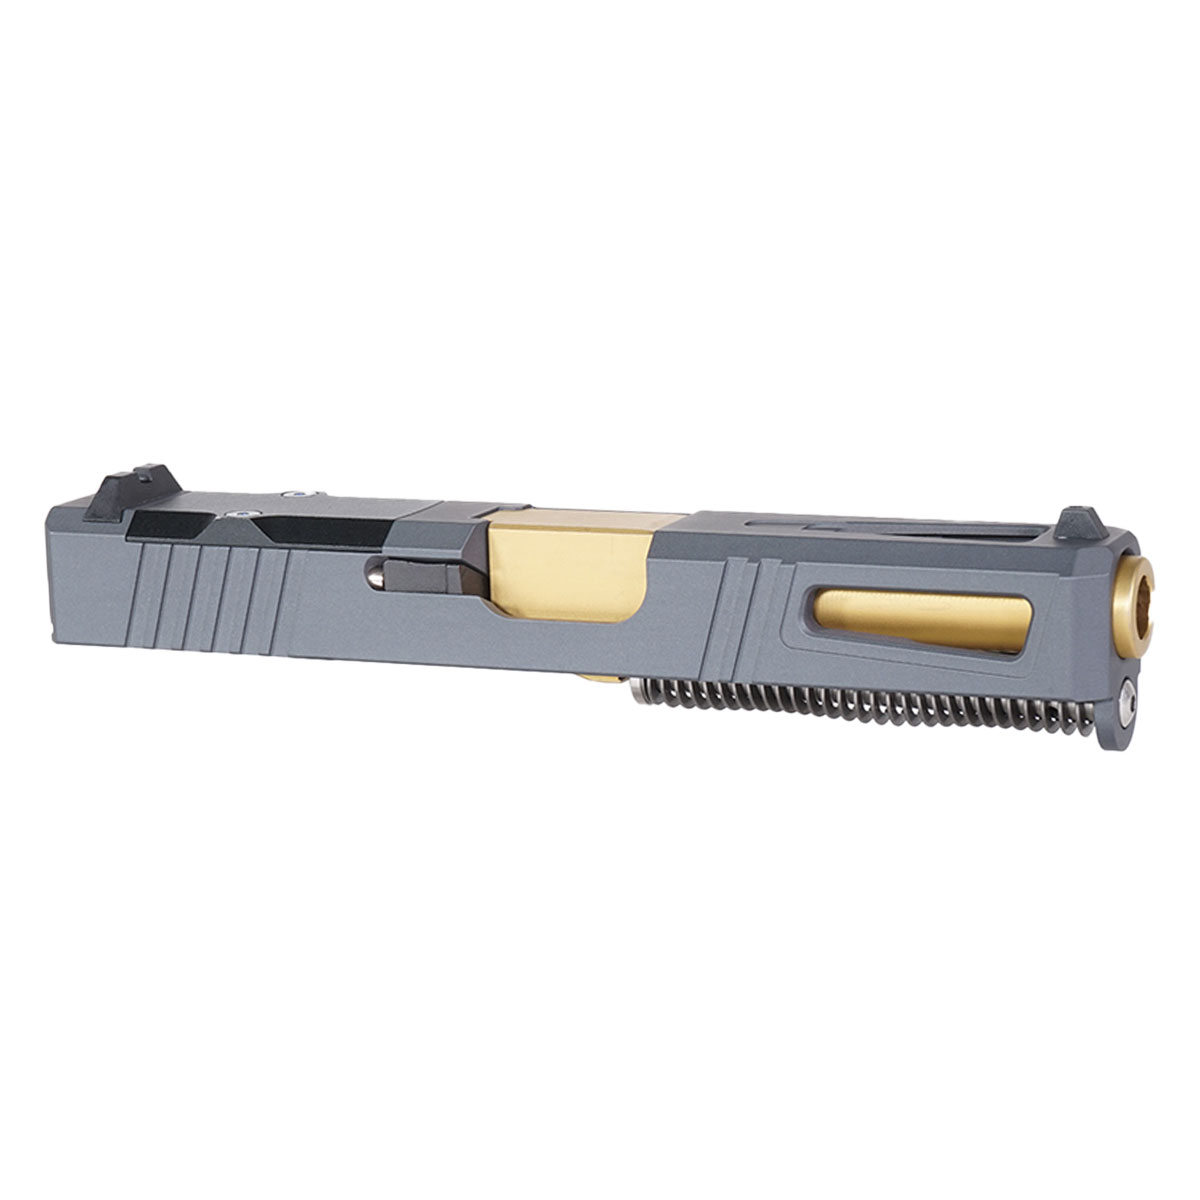 DTT 'Gold Strike' 9mm Complete Slide Kit - Glock 19 Gen 1-3 Compatible